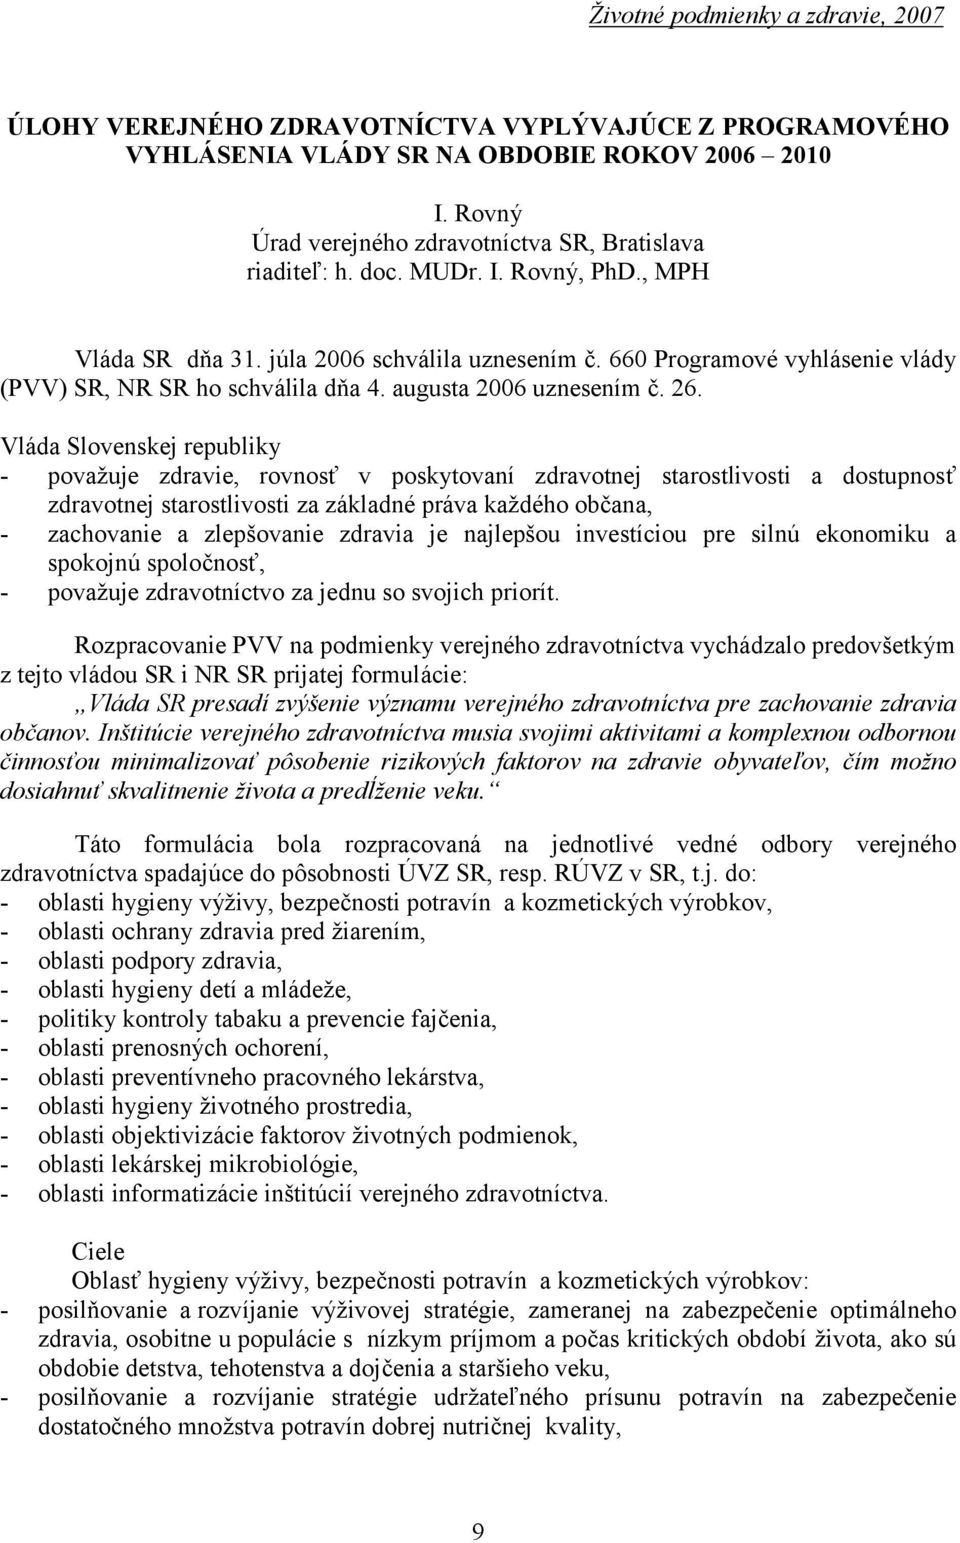 660 Programovévyhlásenie vlády (PVV) SR, NR SR ho schválila dň a 4. augusta 2006 uznesením č. 26.